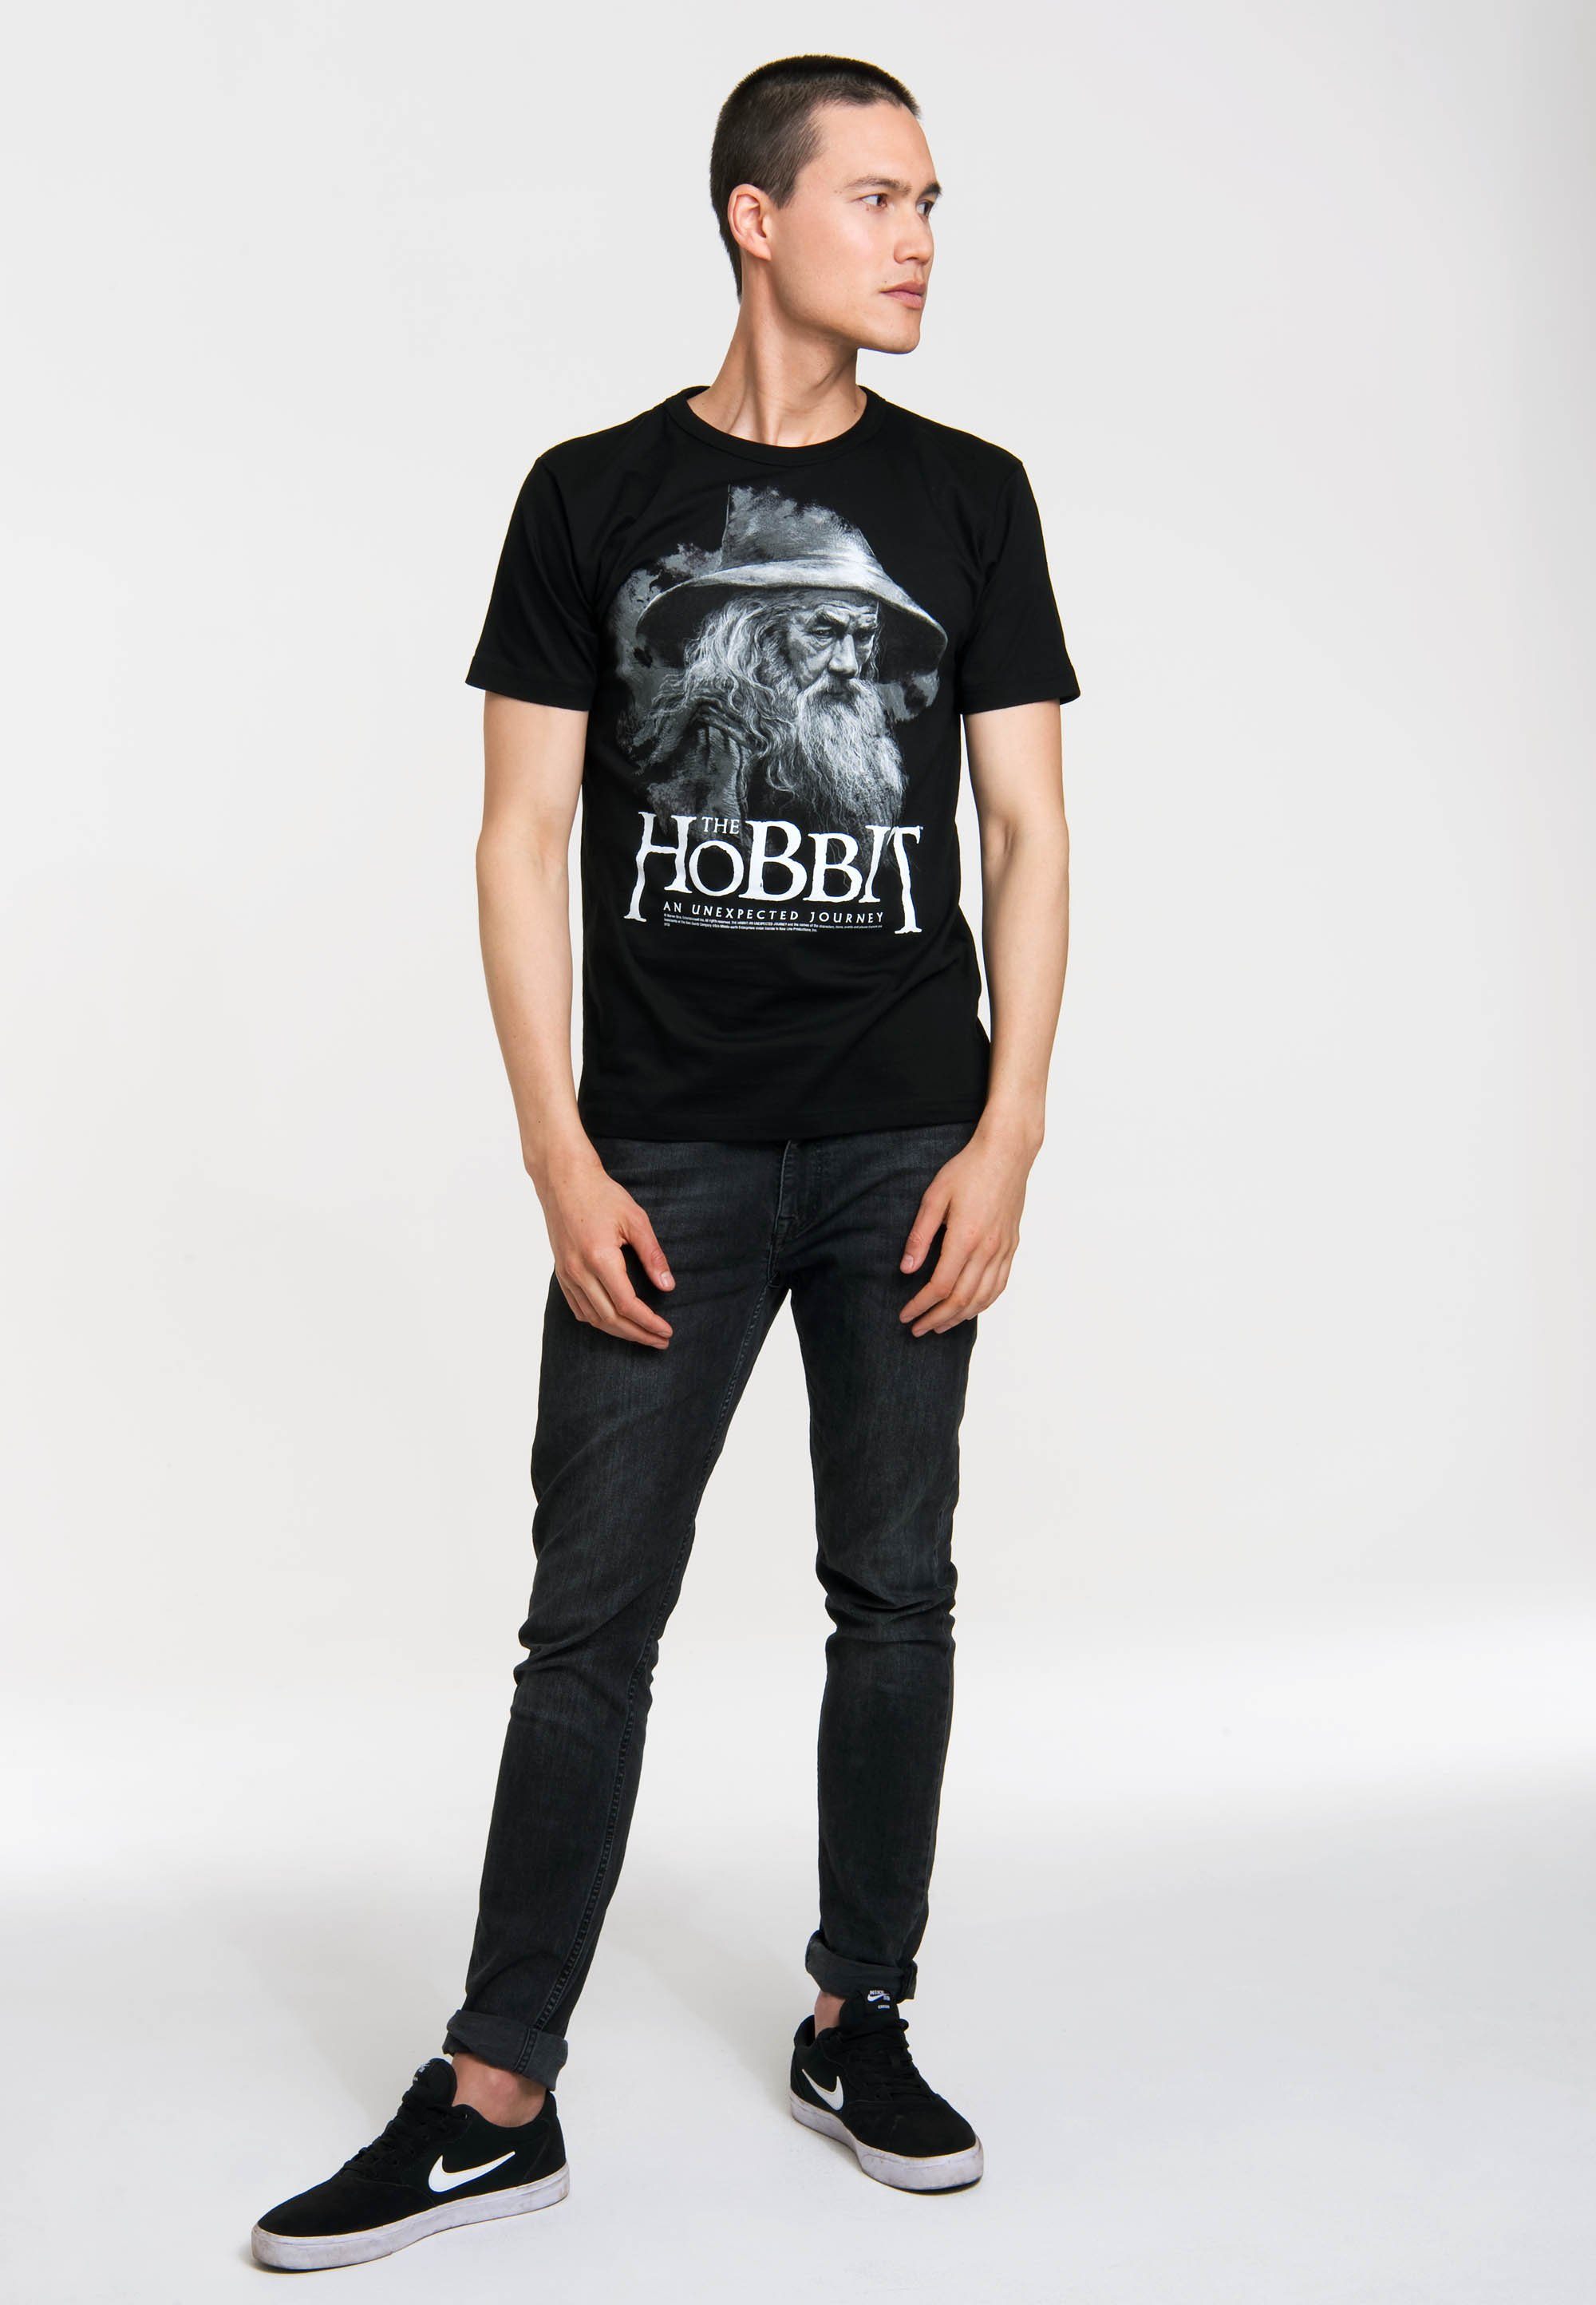 LOGOSHIRT Hobbit T-Shirt Siebdruck The großem mit